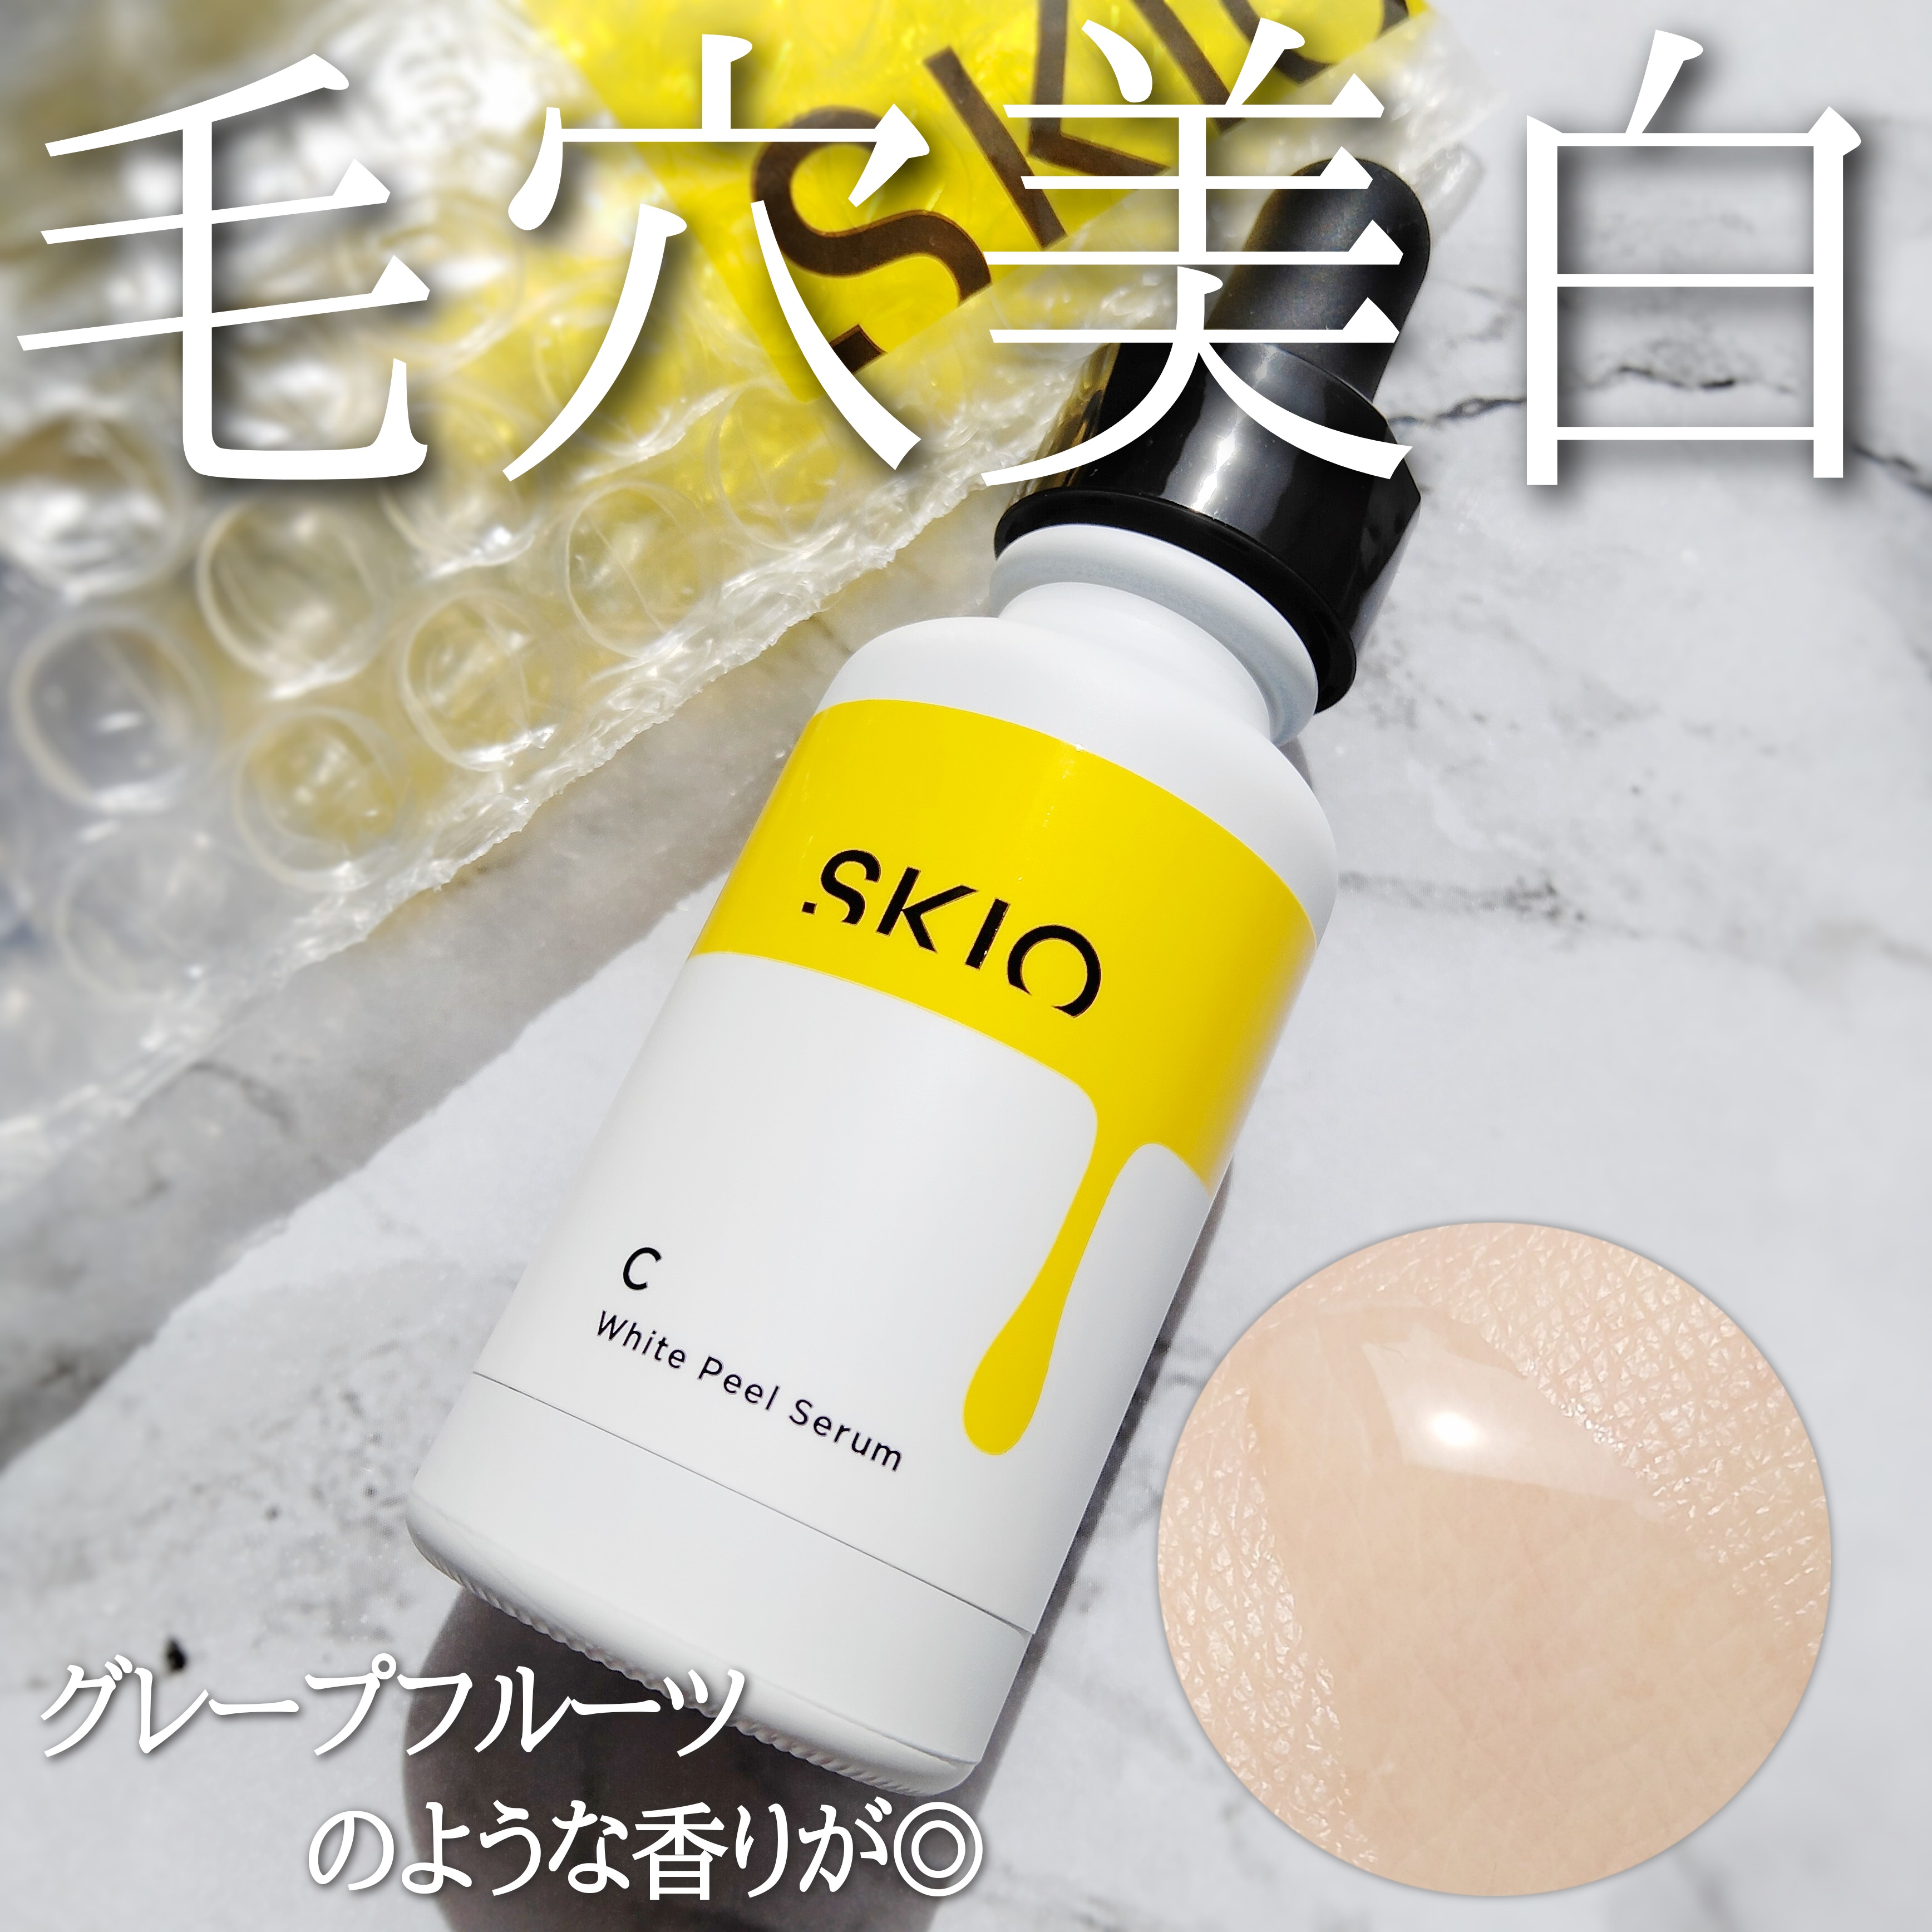 SKIO スキオ VCホワイトピールセラム - 基礎化粧品